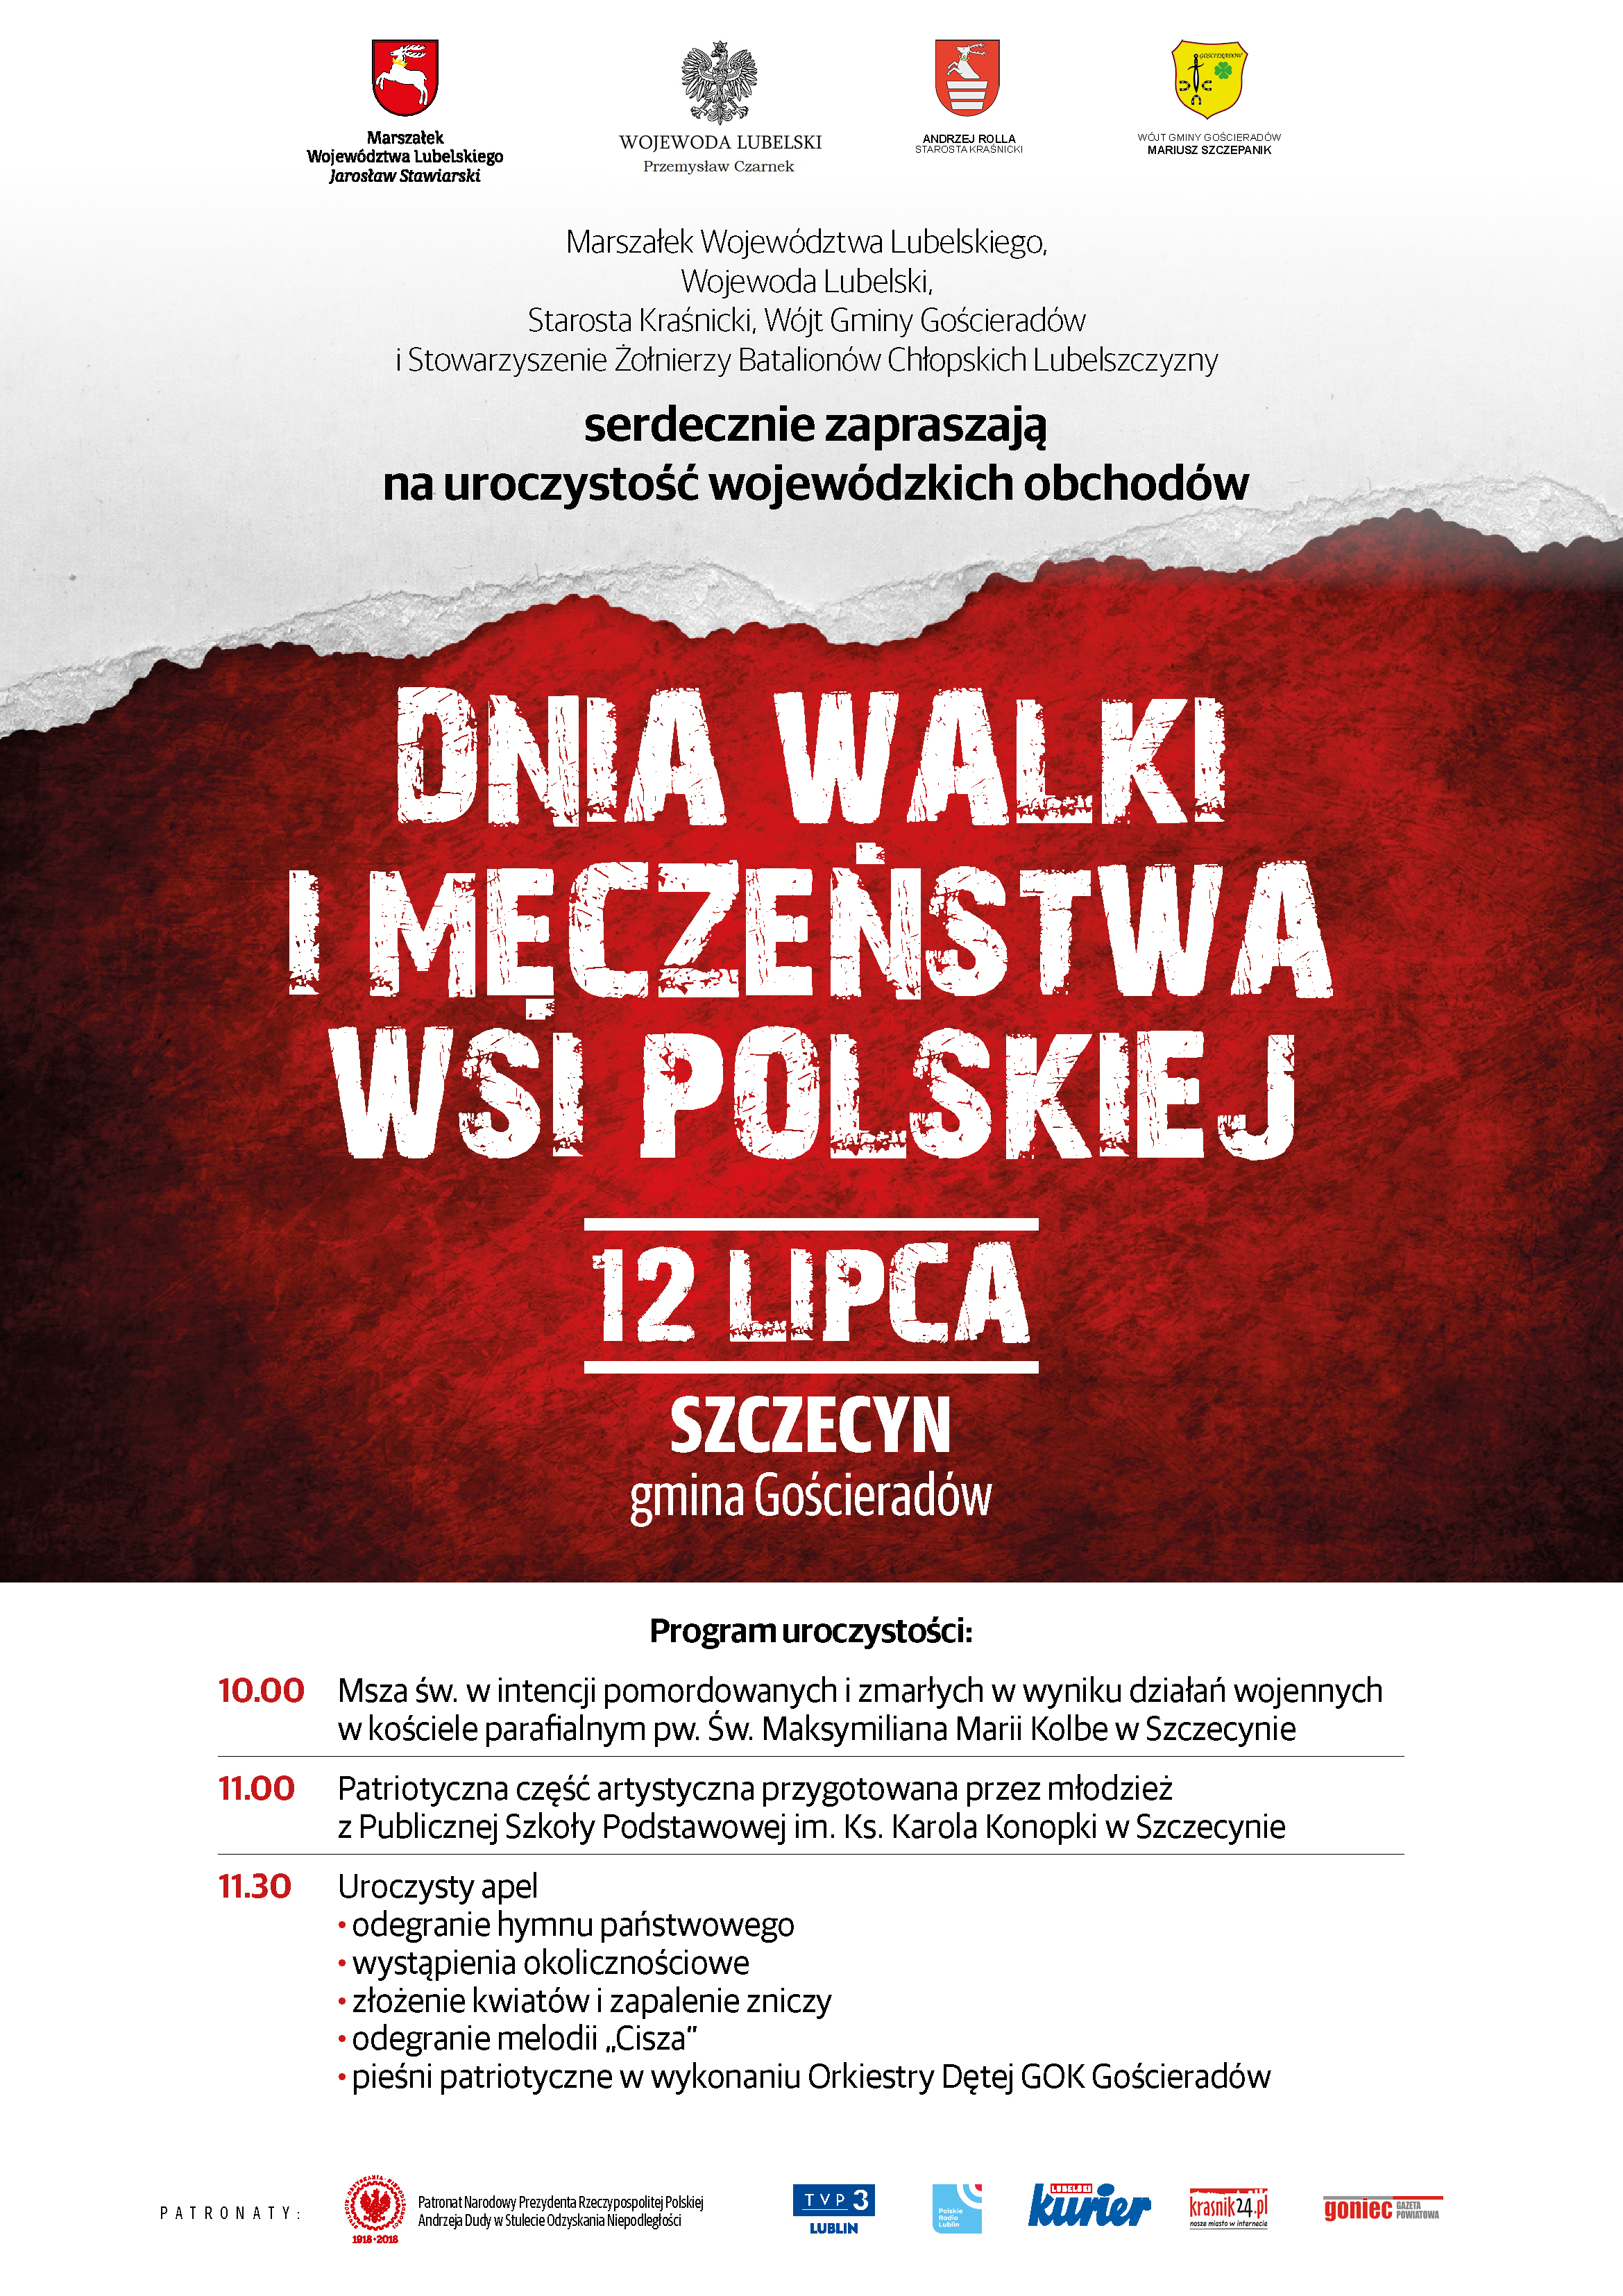 Wojewódzkie obchody Dni Walki i Męczeństwa Wsi Polskiej